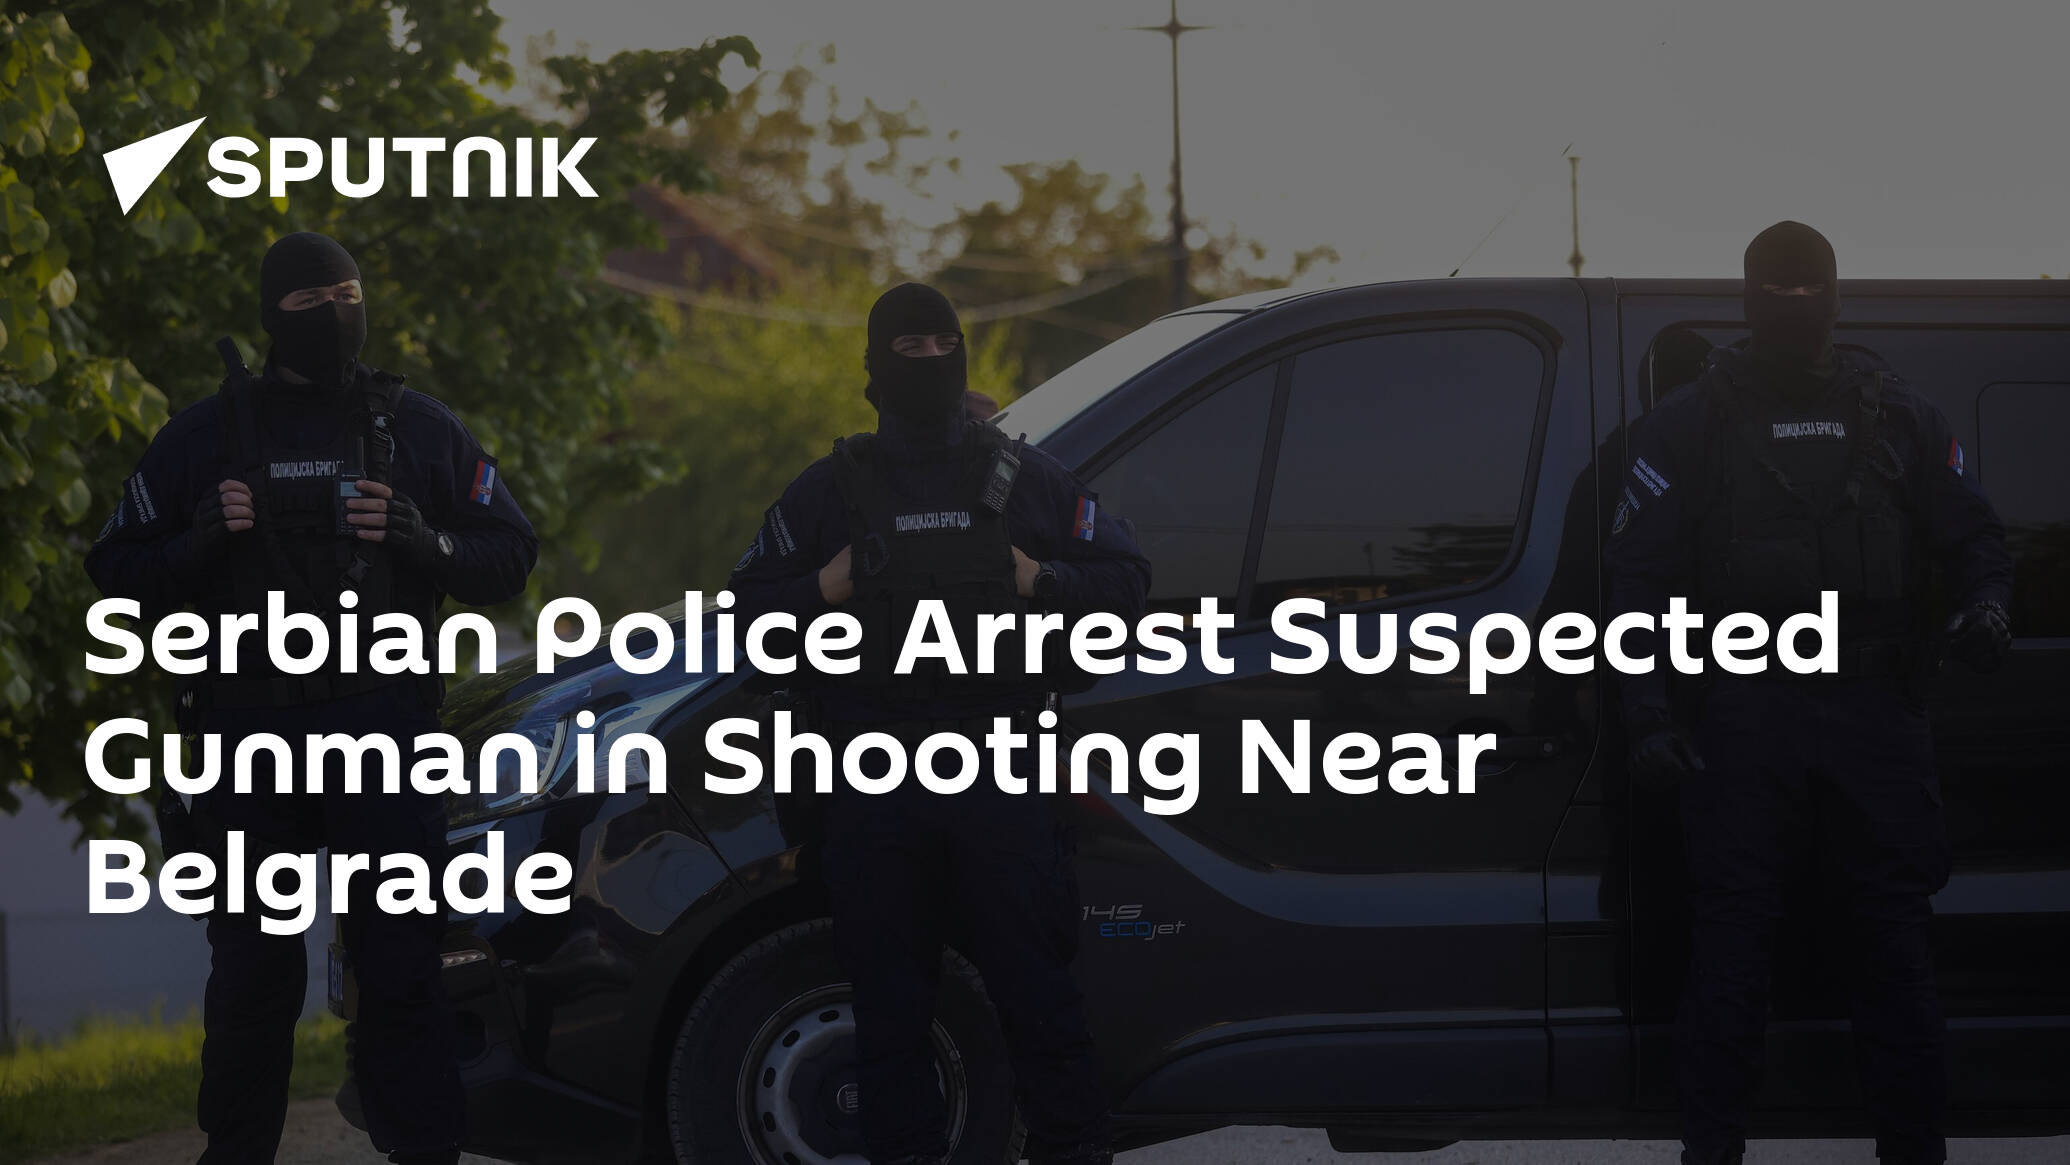 Serbian Police Arrest Suspected Gunman in Shooting Near Belgrade